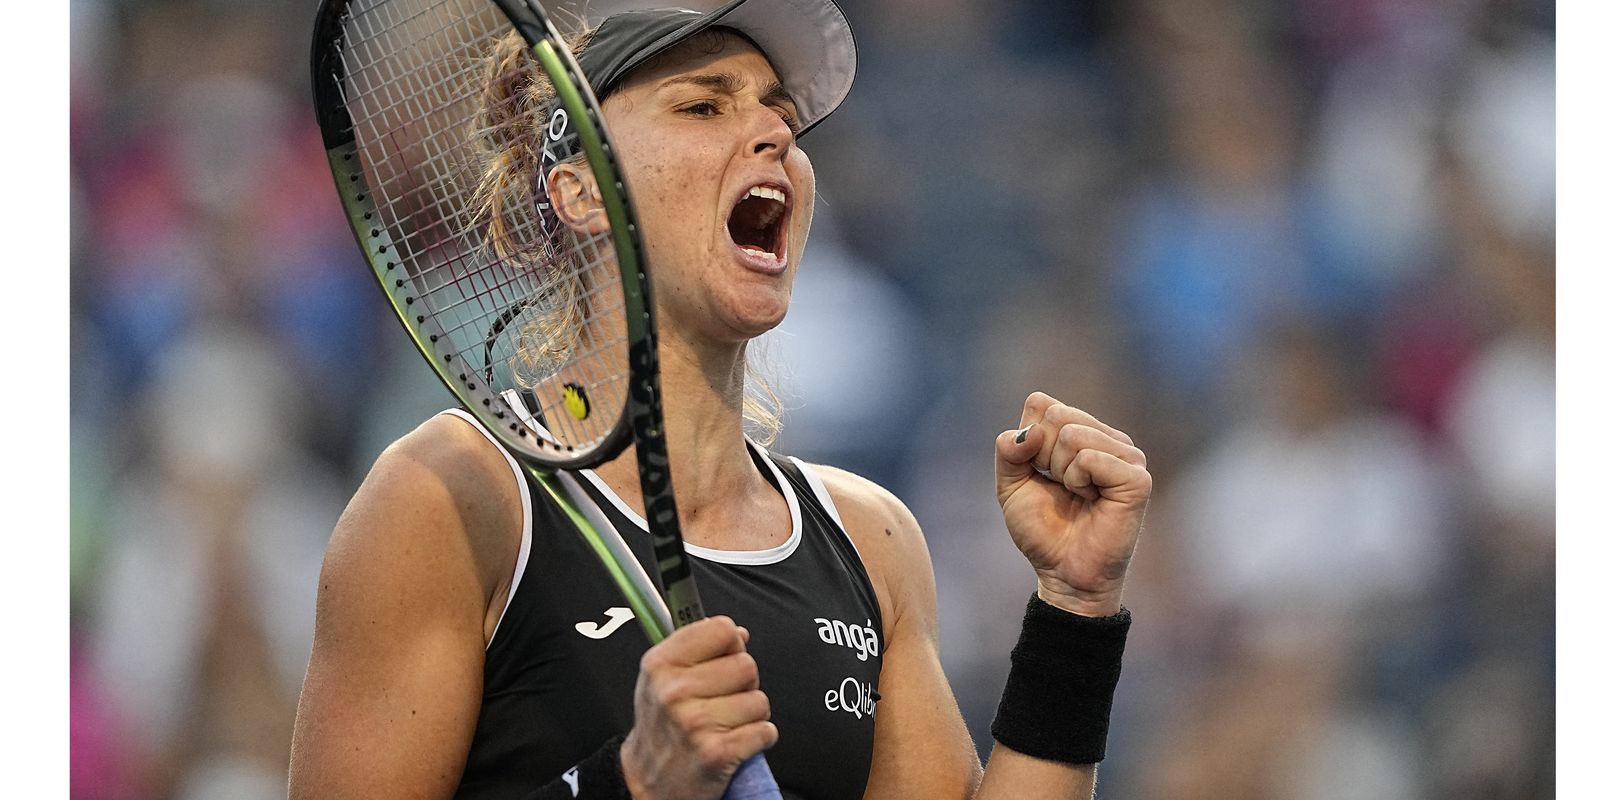 Vitória épica de Bia Haddad entra no top 3 de Roland Garros